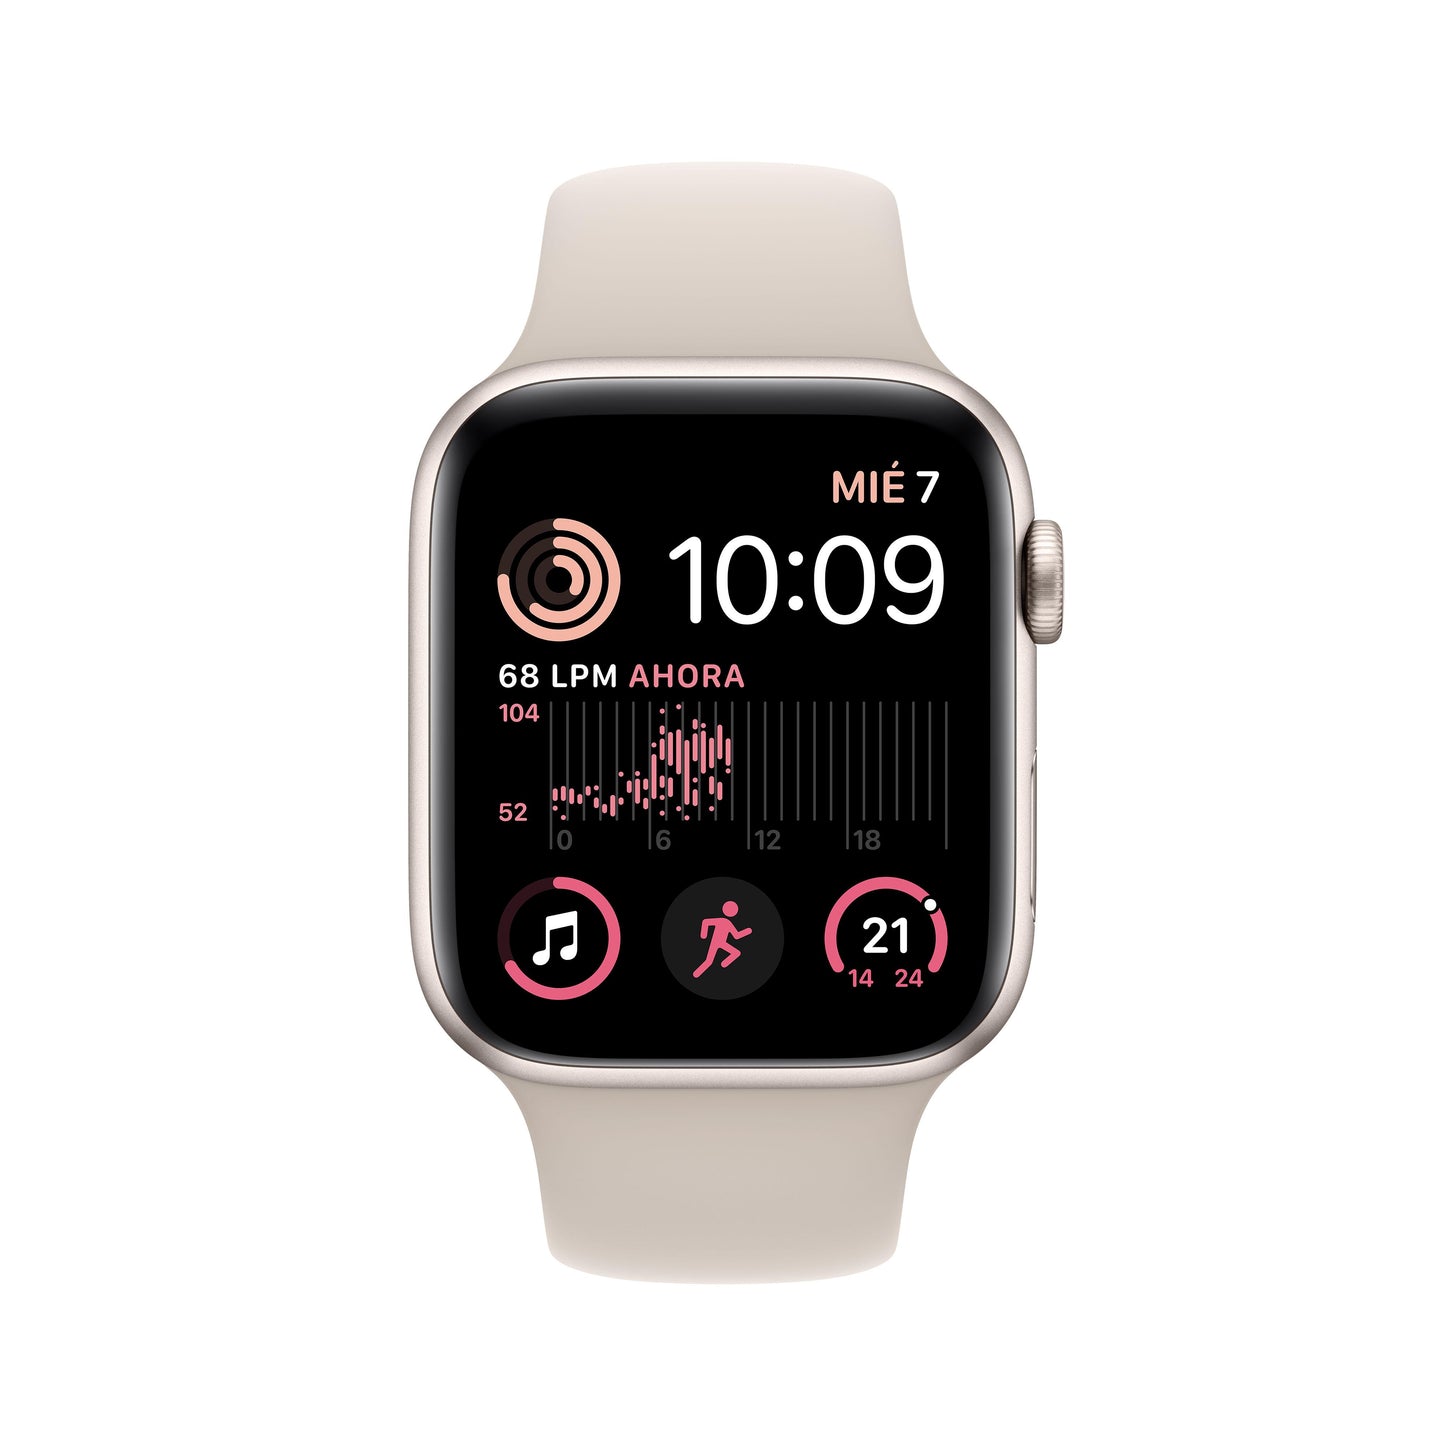 Apple Watch SE (GPS) - Caja de aluminio en blanco estrella de 44 mm - Correa deportiva blanco estrella - Talla única